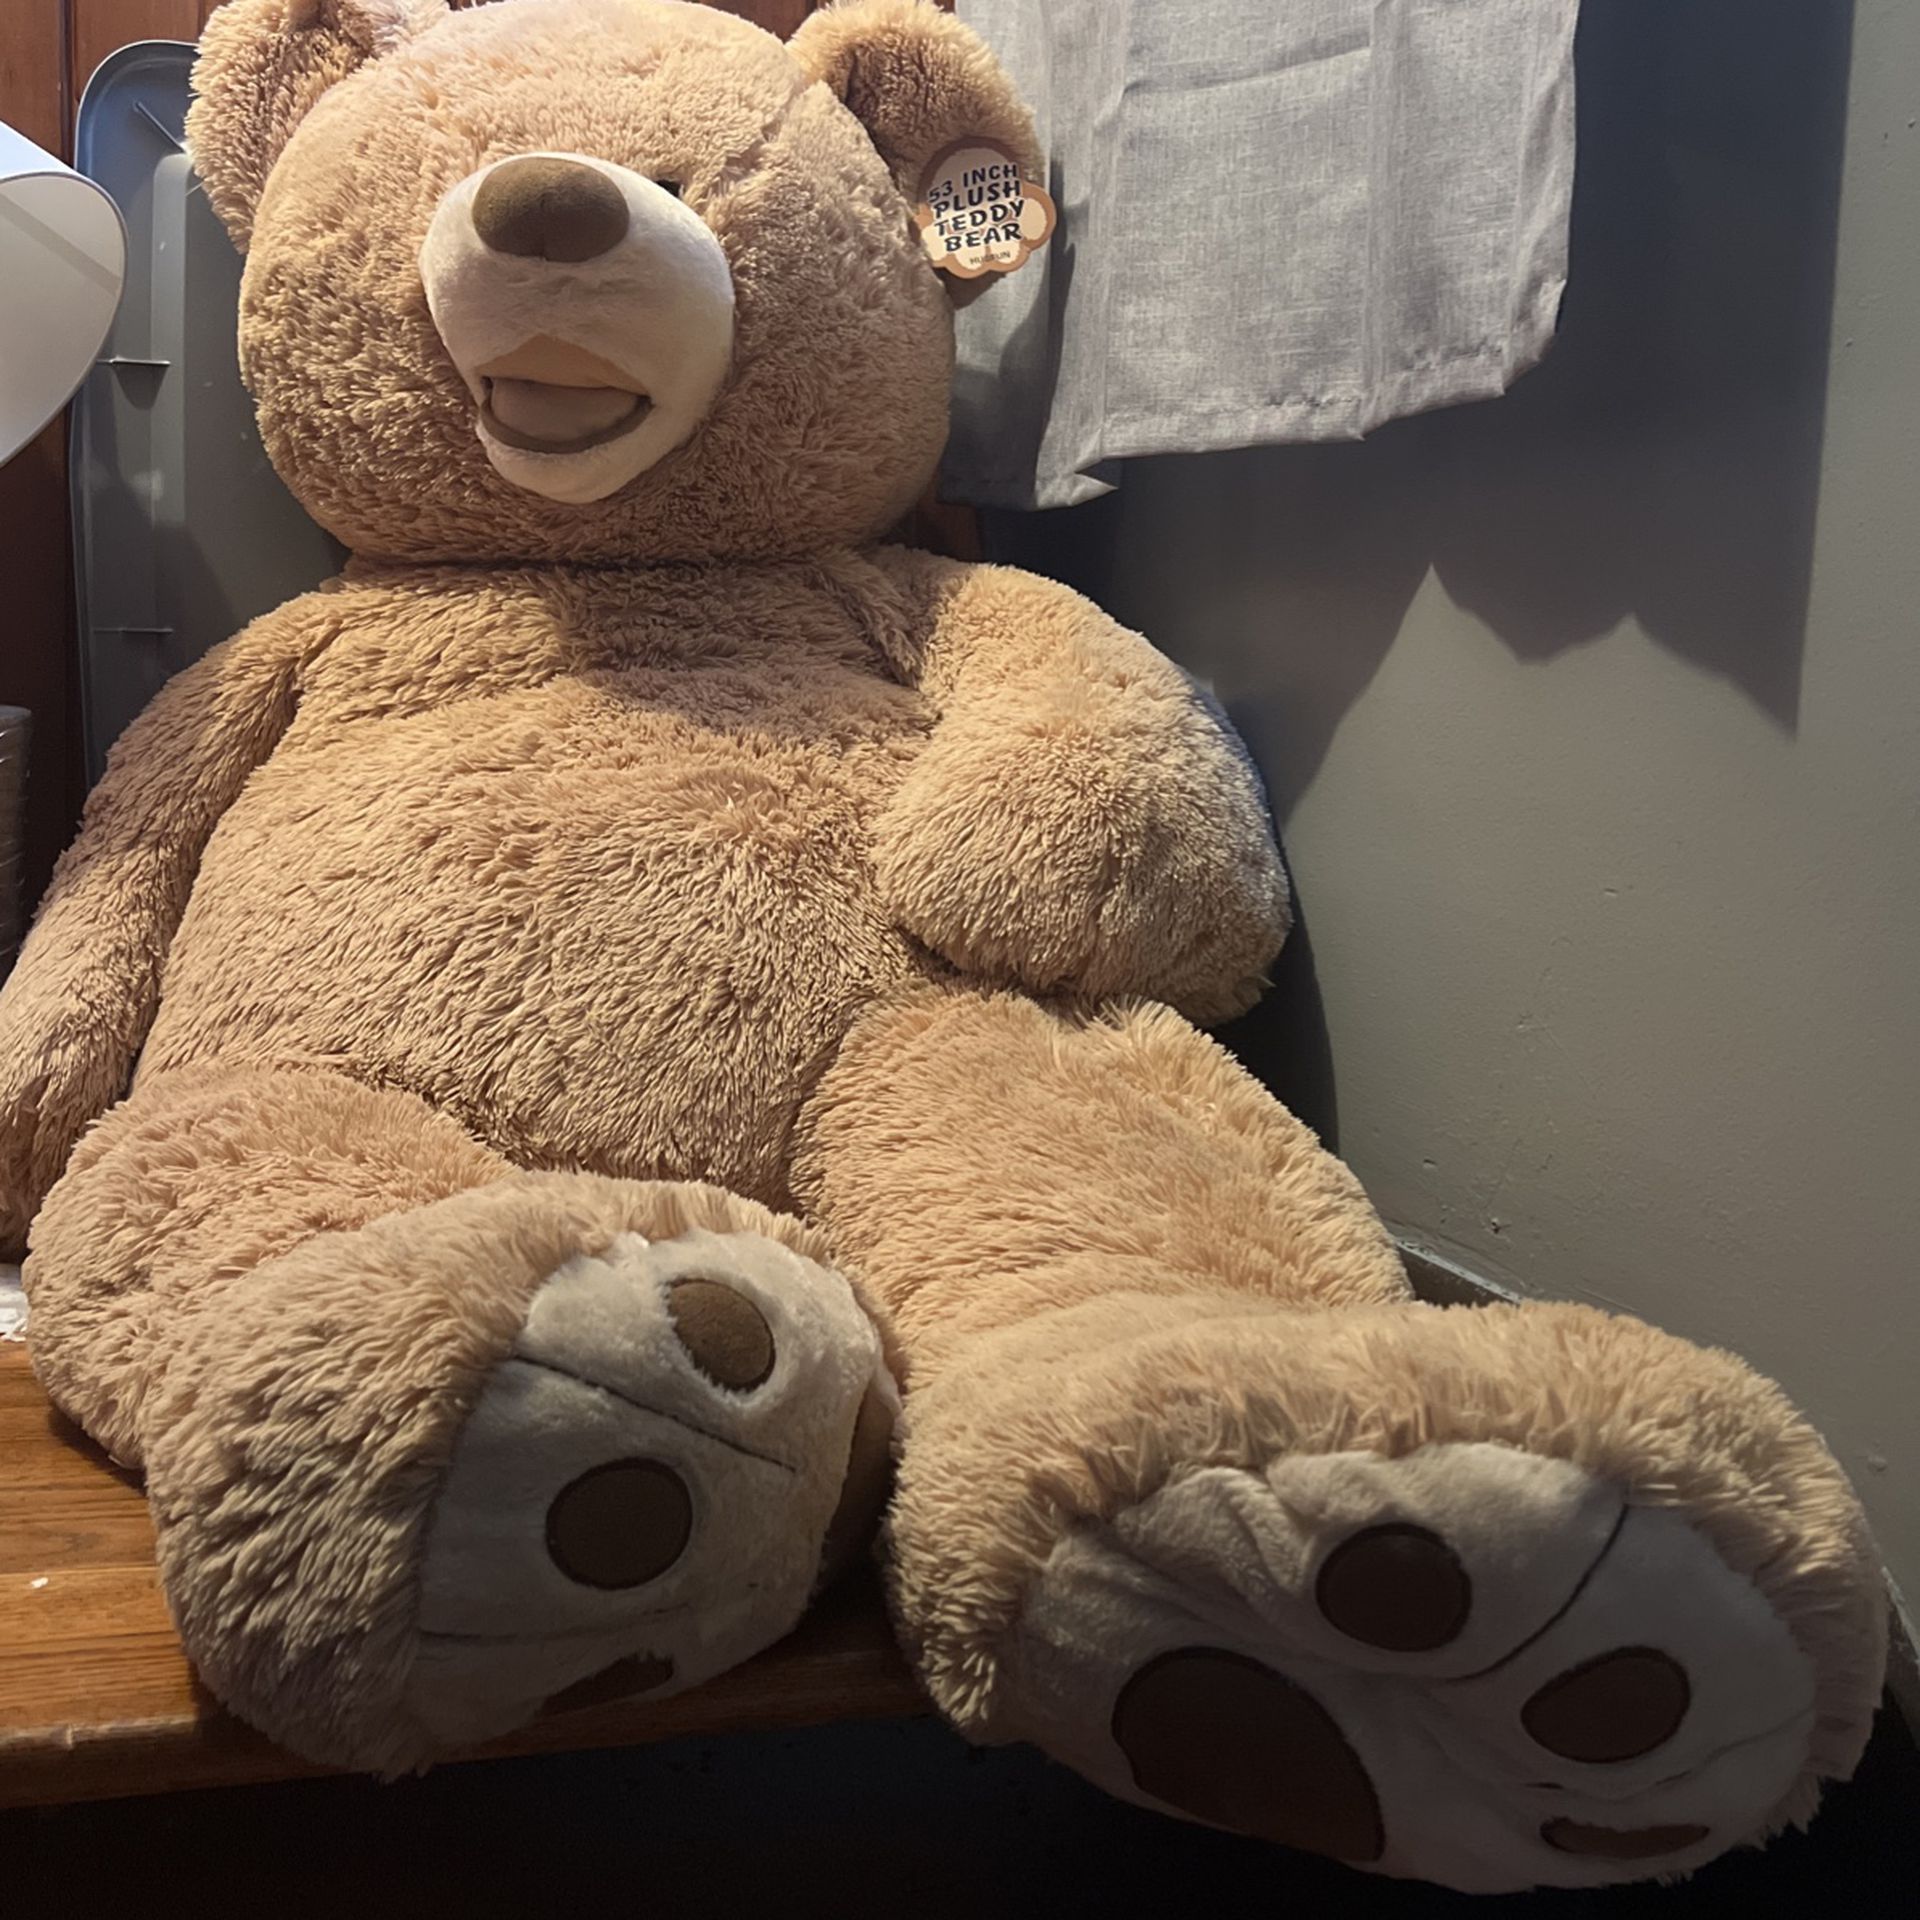 53 Inch Teddy Bear $20